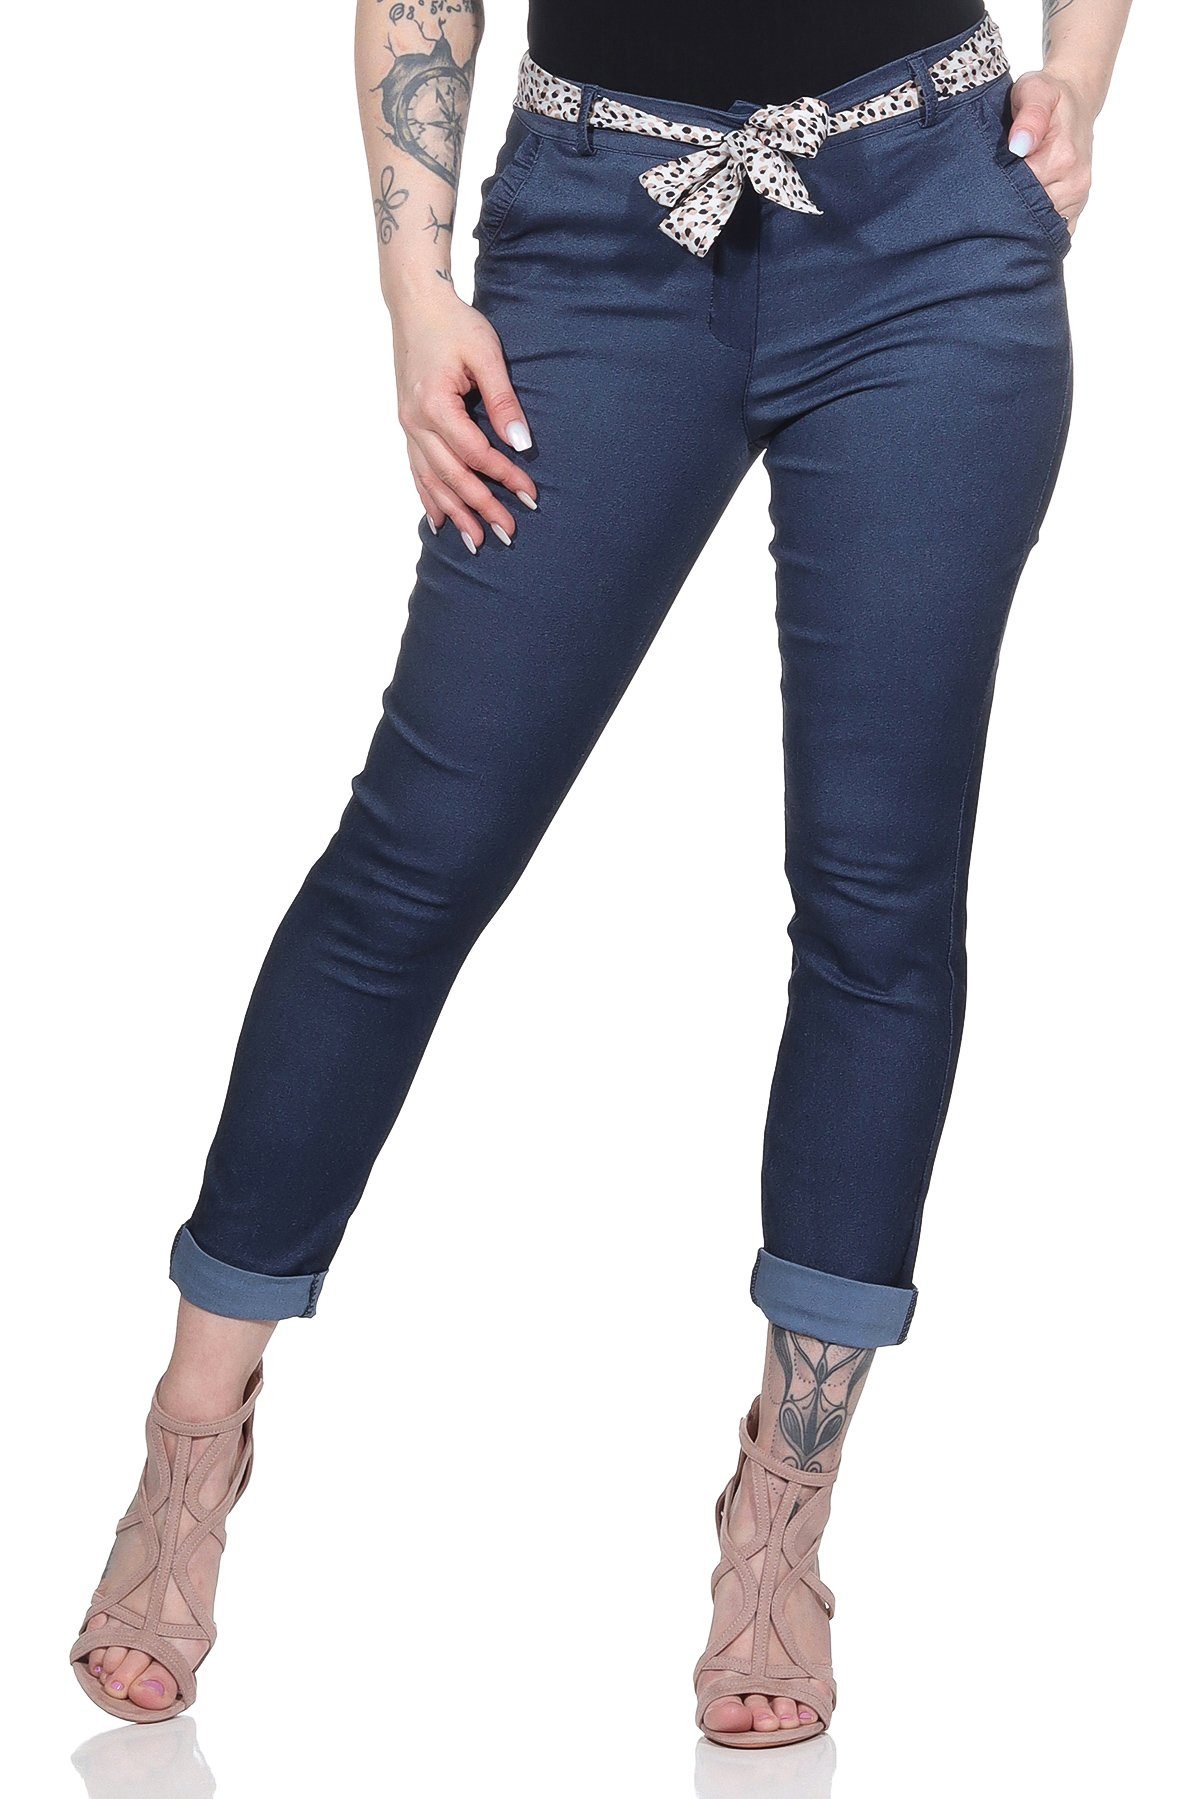 Mississhop Stretch-Hose Female Damen Stretch Klassische Chino Hose mit gemustertem Tuch M. 366 Jeansblau